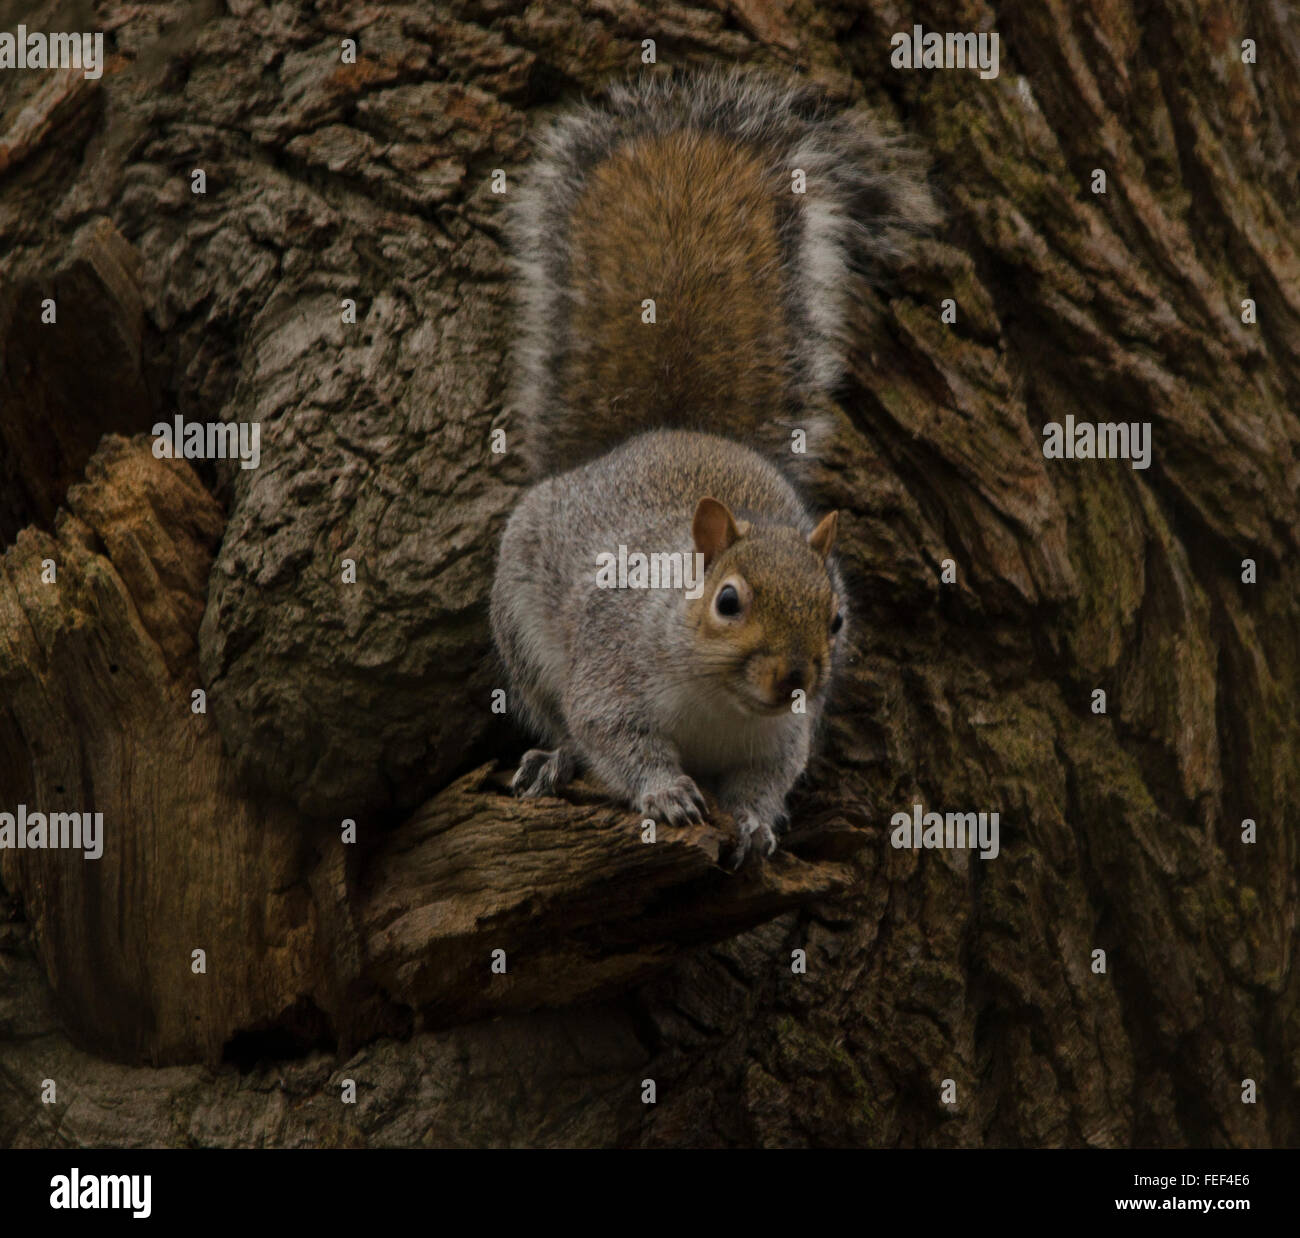 Das sind wilde Eichhörnchen völlig in einer natürlichen Umgebung fotografiert Stockfoto